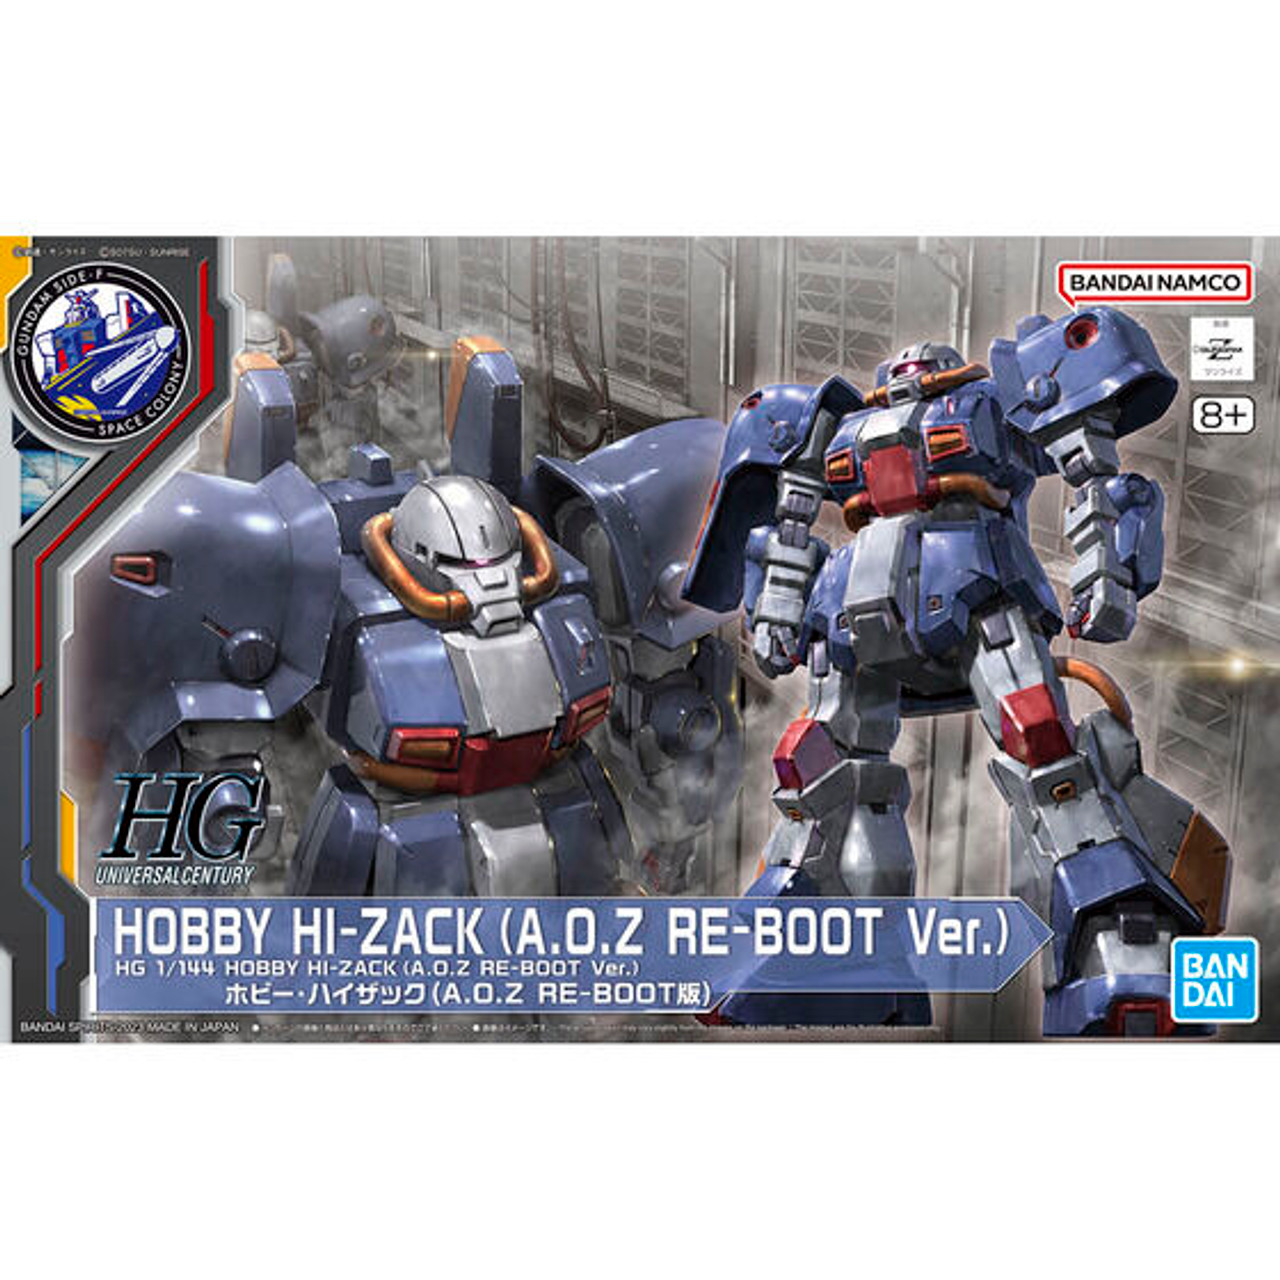 HGUC 1/144 Hobby Hi-Zack (A.O.Z RE-BOOT Ver.) Plastic Model ( IN STOCK )